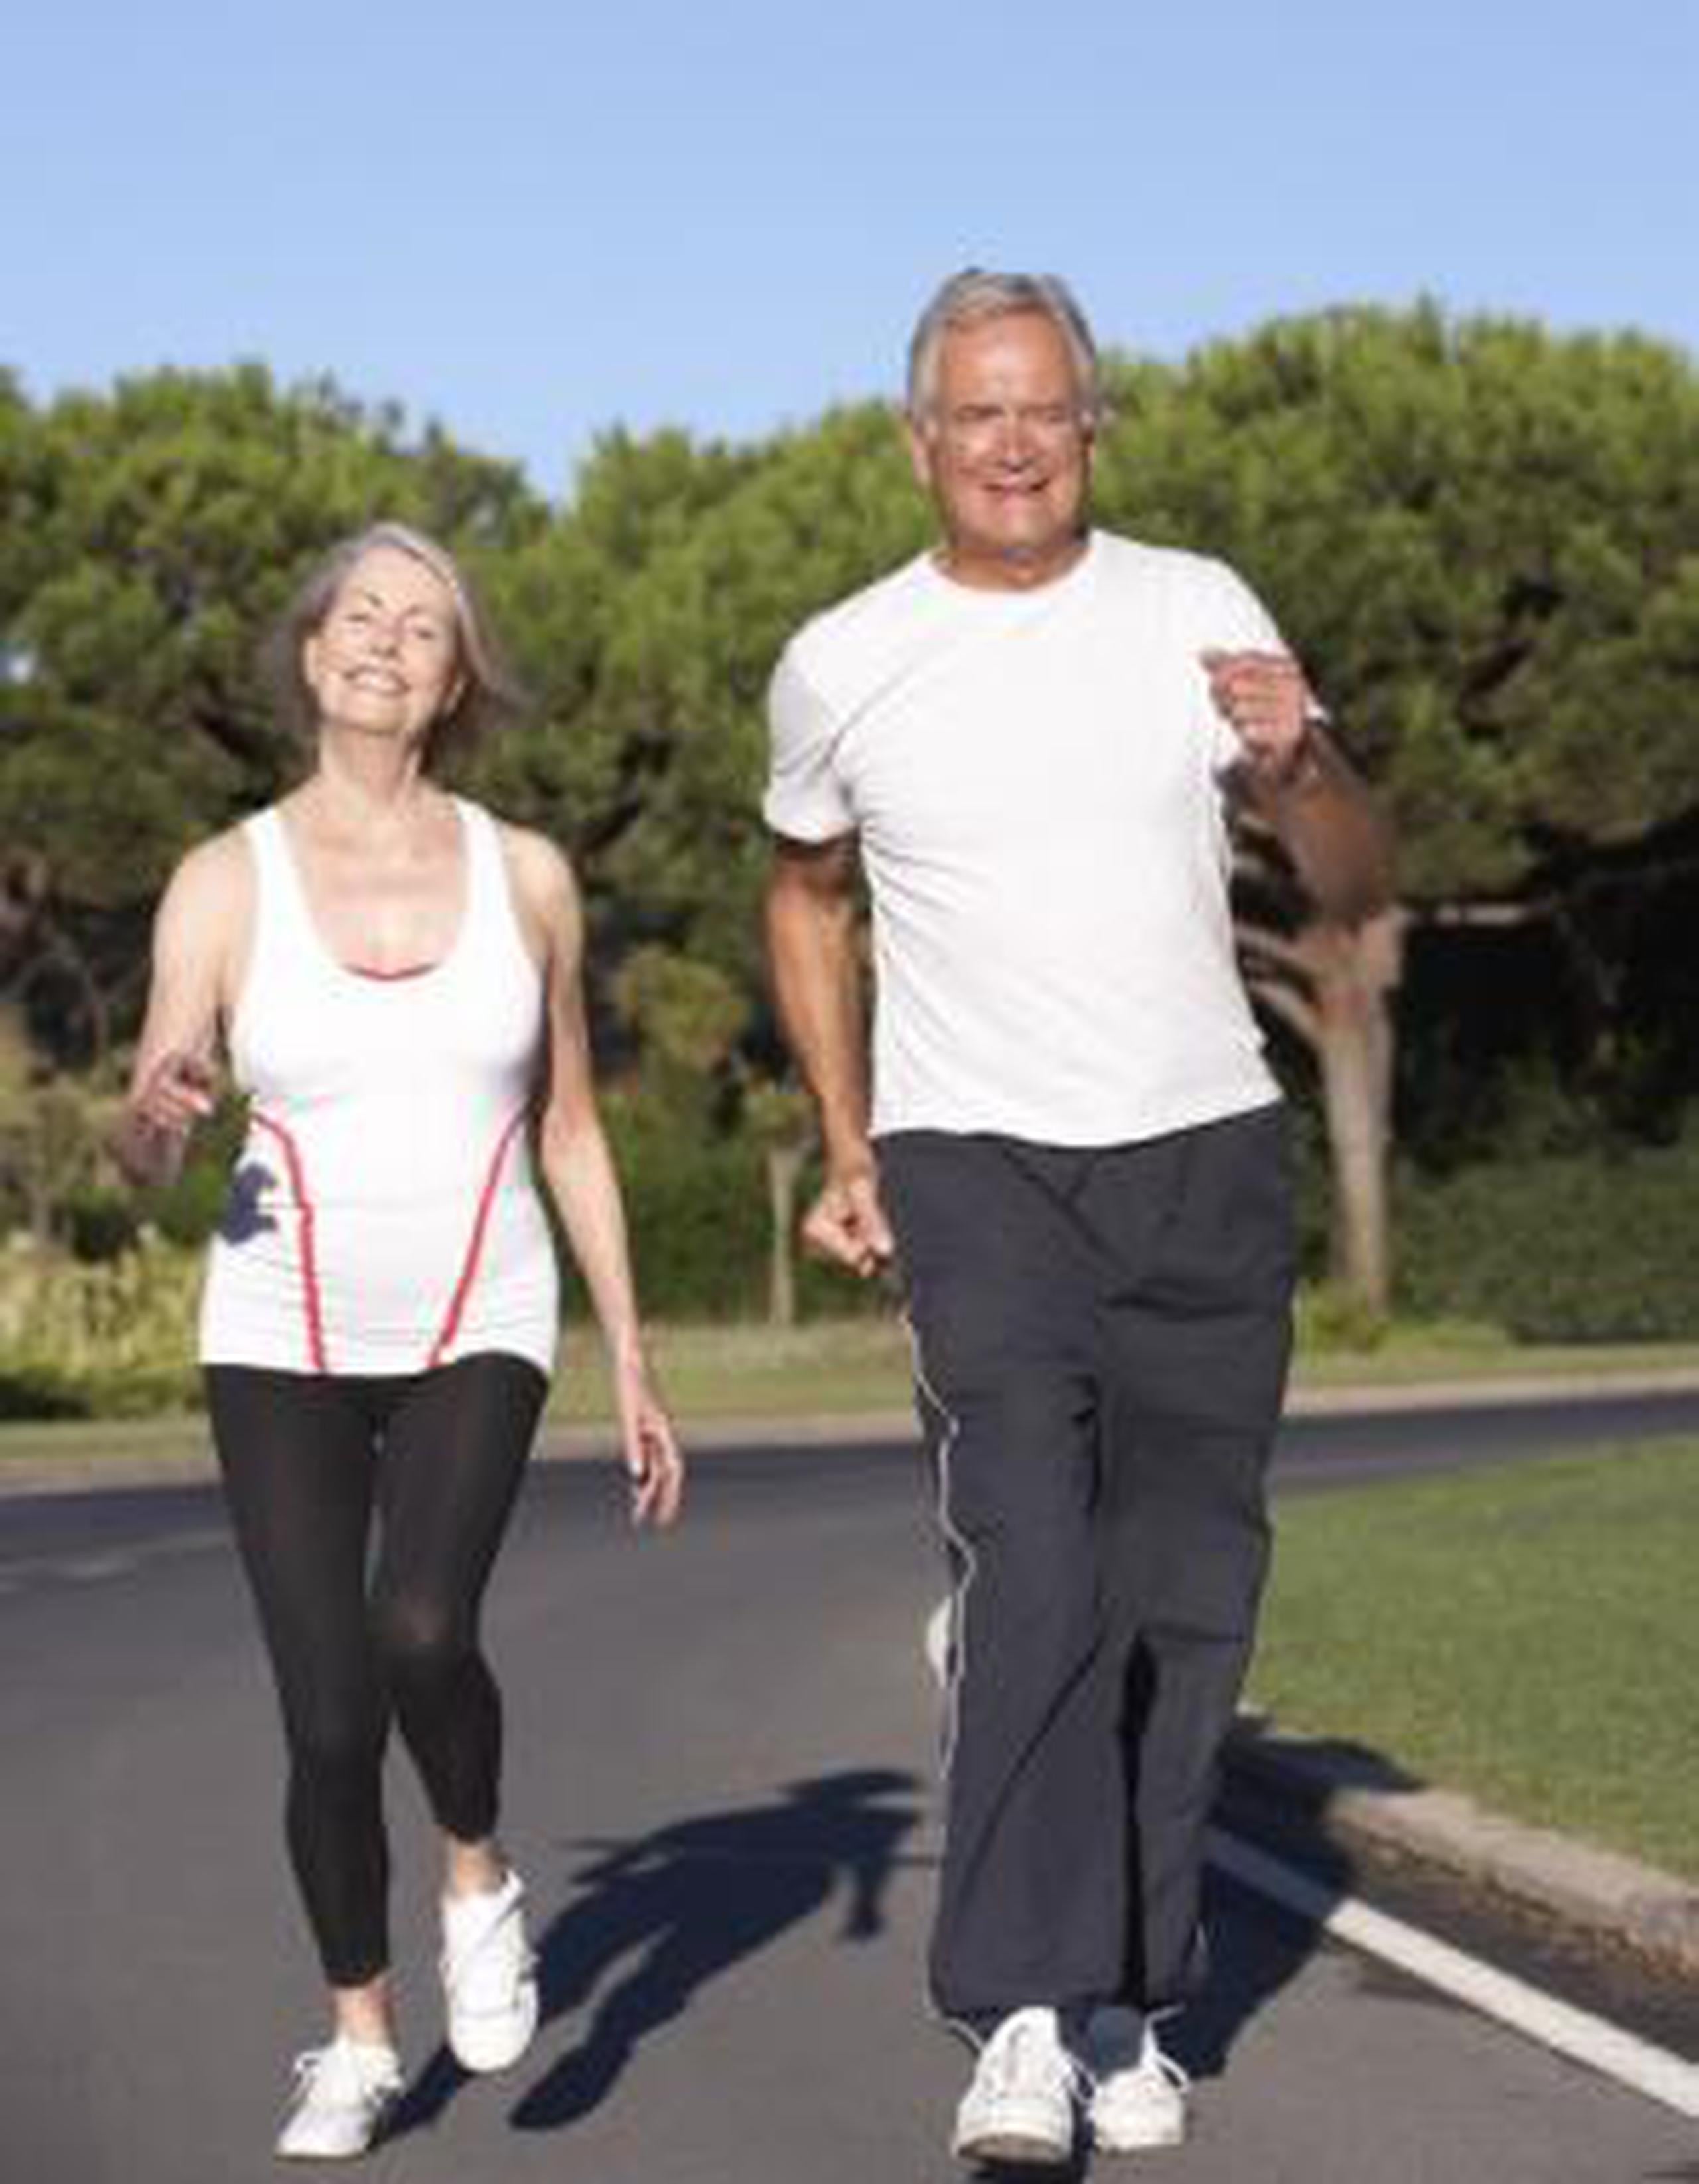 Caminar ofrece numerosos beneficios, desde el control de peso, hasta ser uno de los métodos más efectivos para vigorizar nuestra capacidad física, mental y espiritual. (Shutterstock)